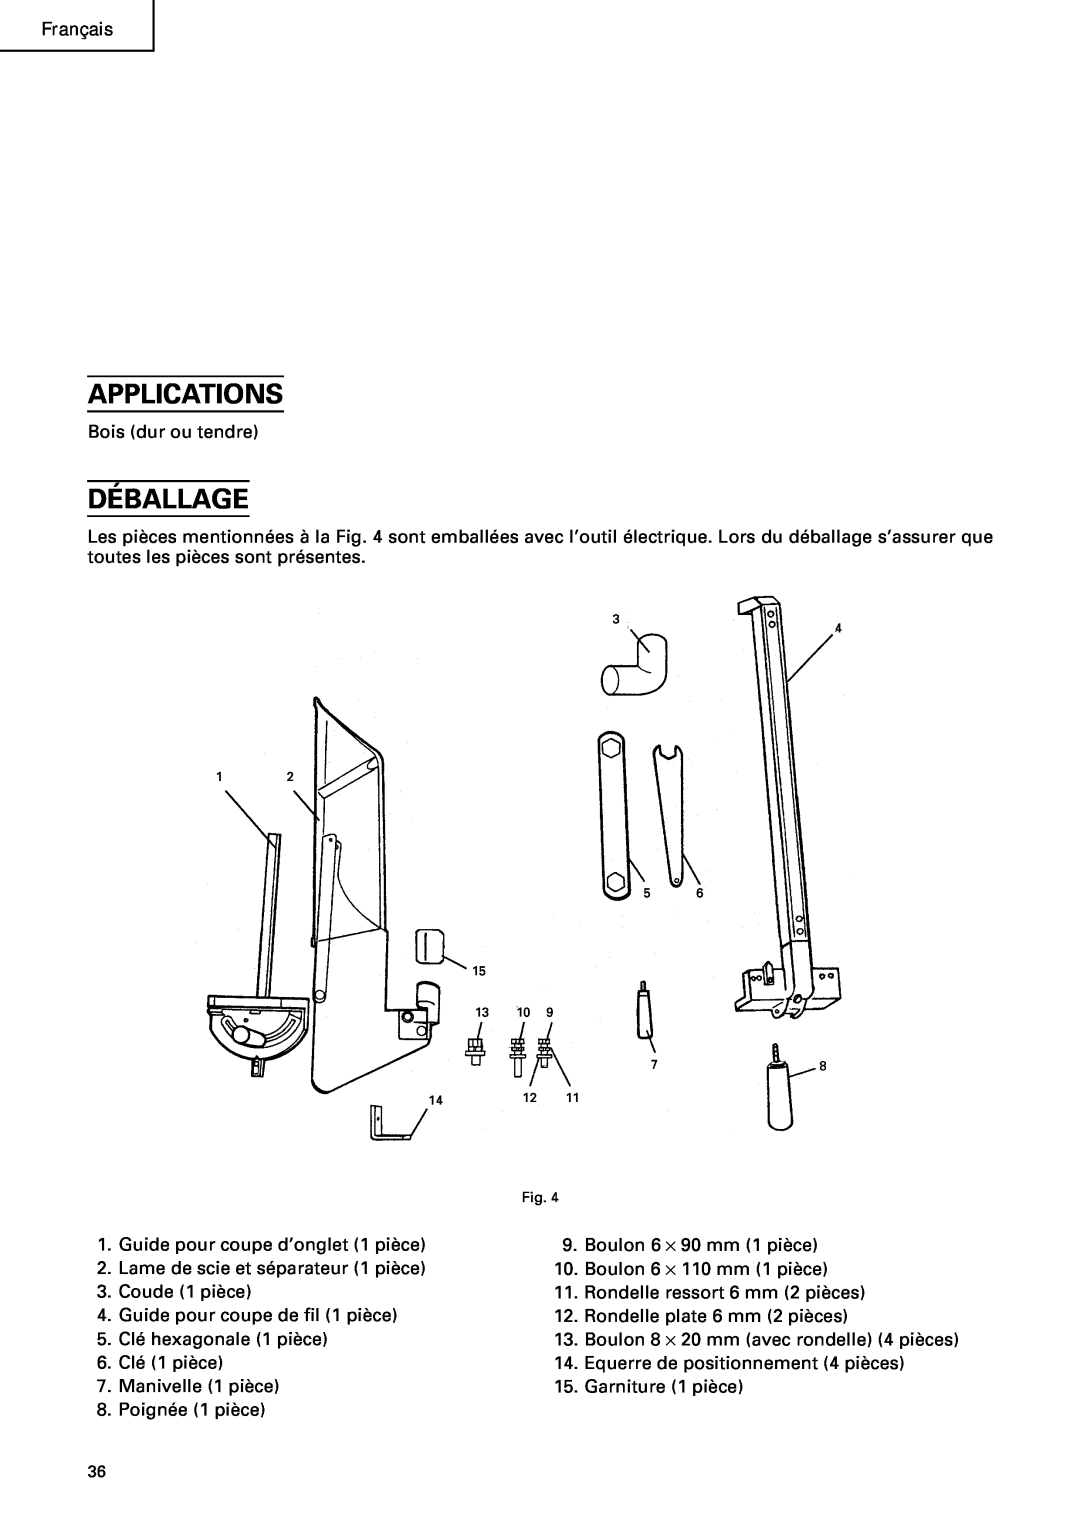 Hitachi C10RA2 instruction manual Déballage, Applications, Français 